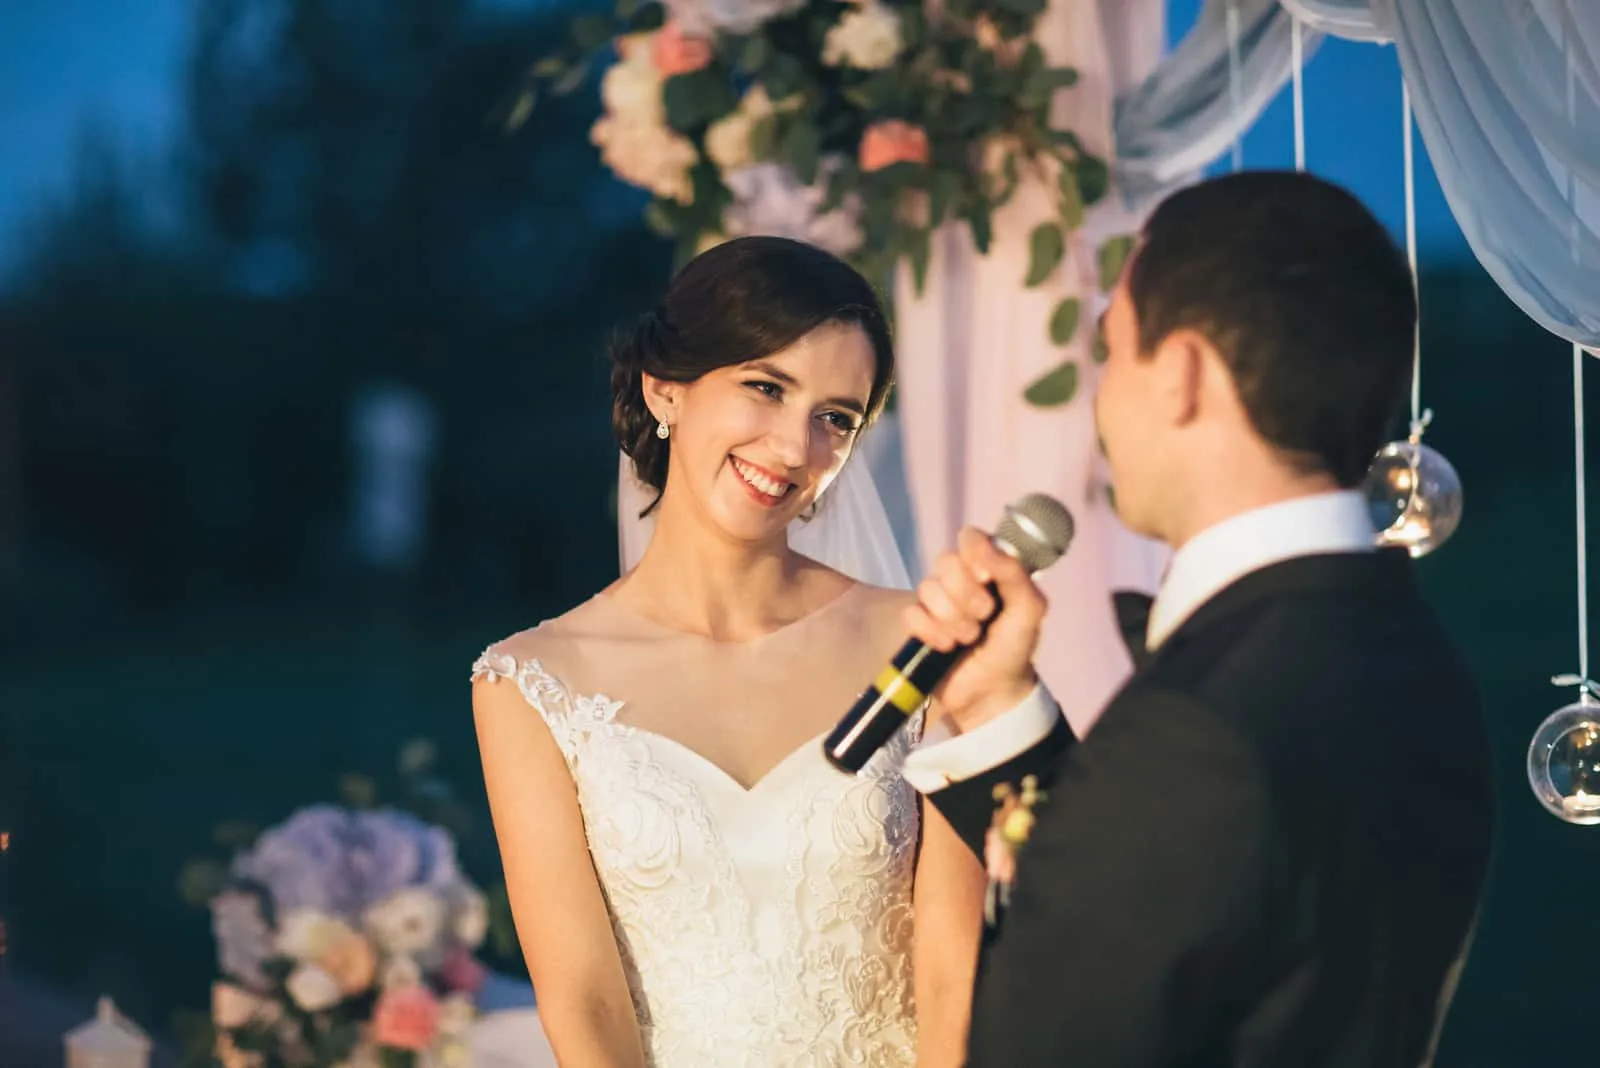 Der Bräutigam hält ein Mikrofon und spricht mit seiner Braut